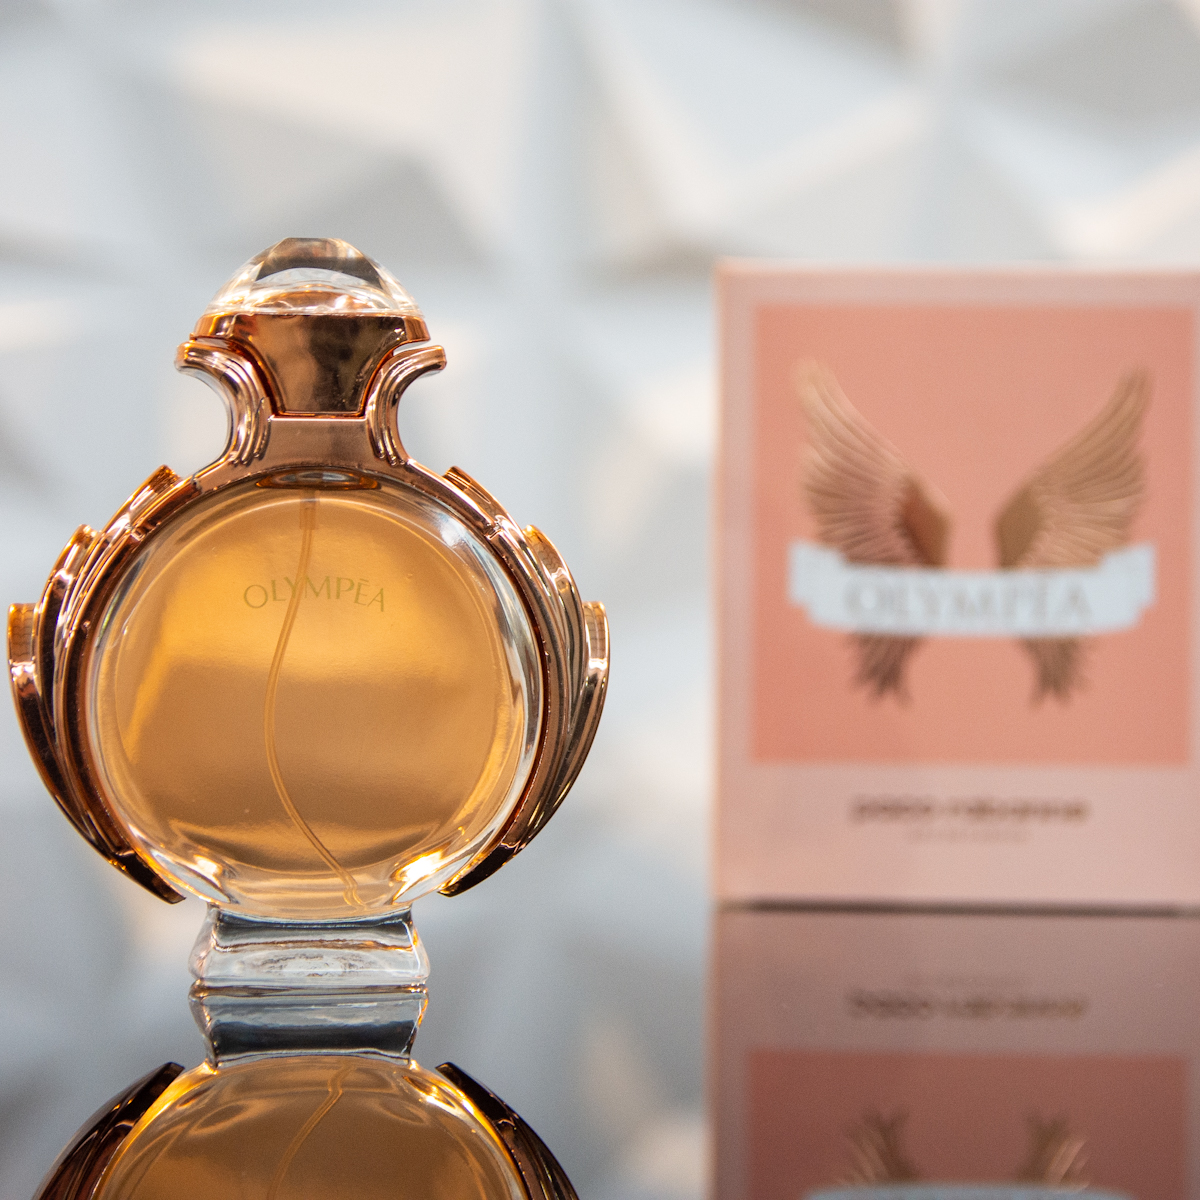 Perfume Paco Rabanne Olympea Para Mujer (Producto Replica con Fragancia Importada)